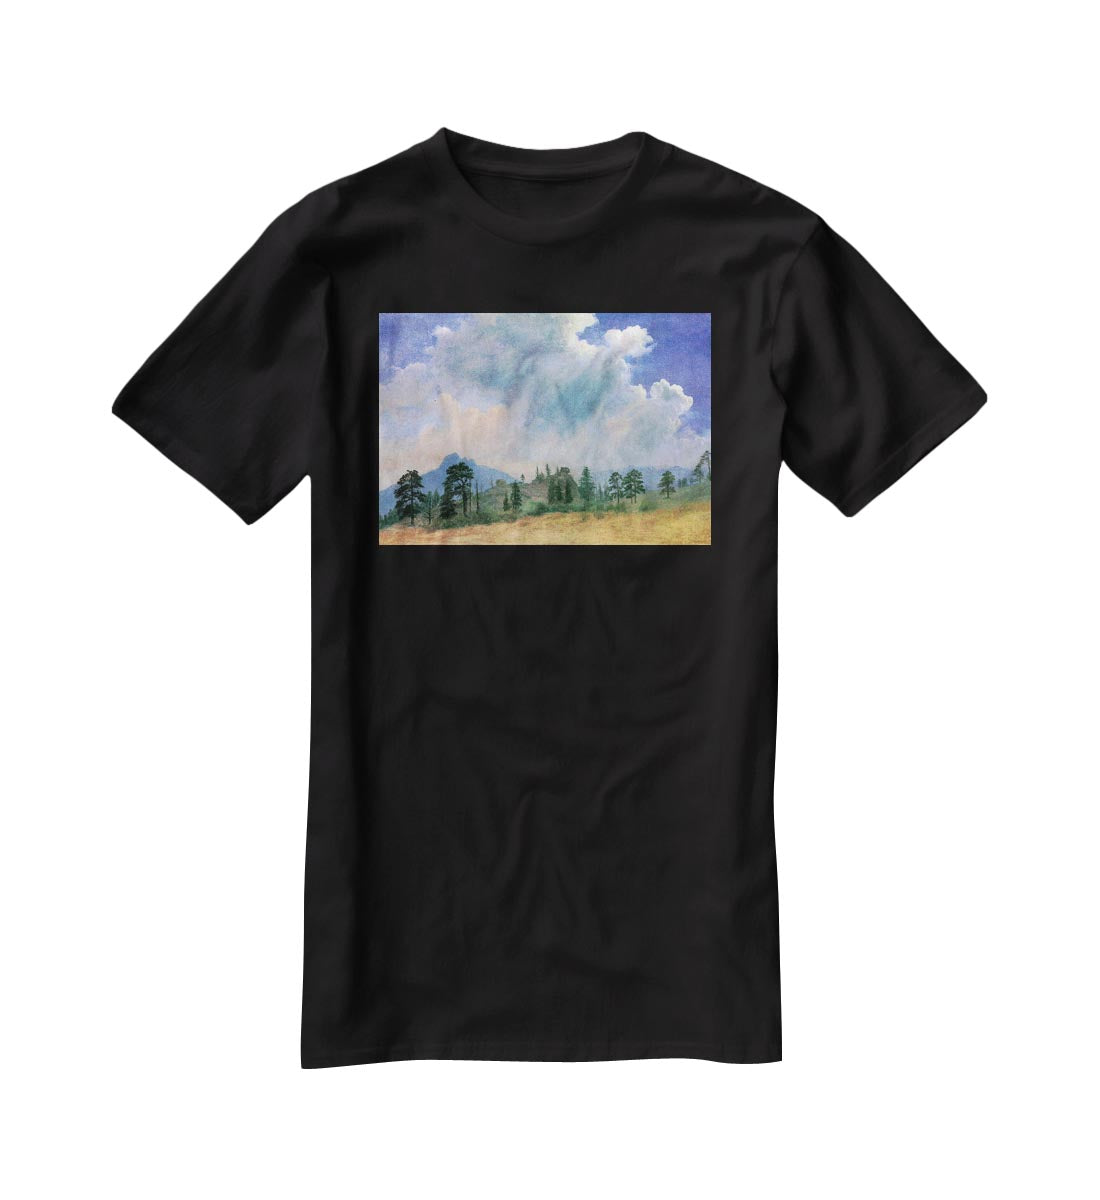 Fir trees and storm clouds by Bierstadt T-Shirt - Canvas Art Rocks - 1